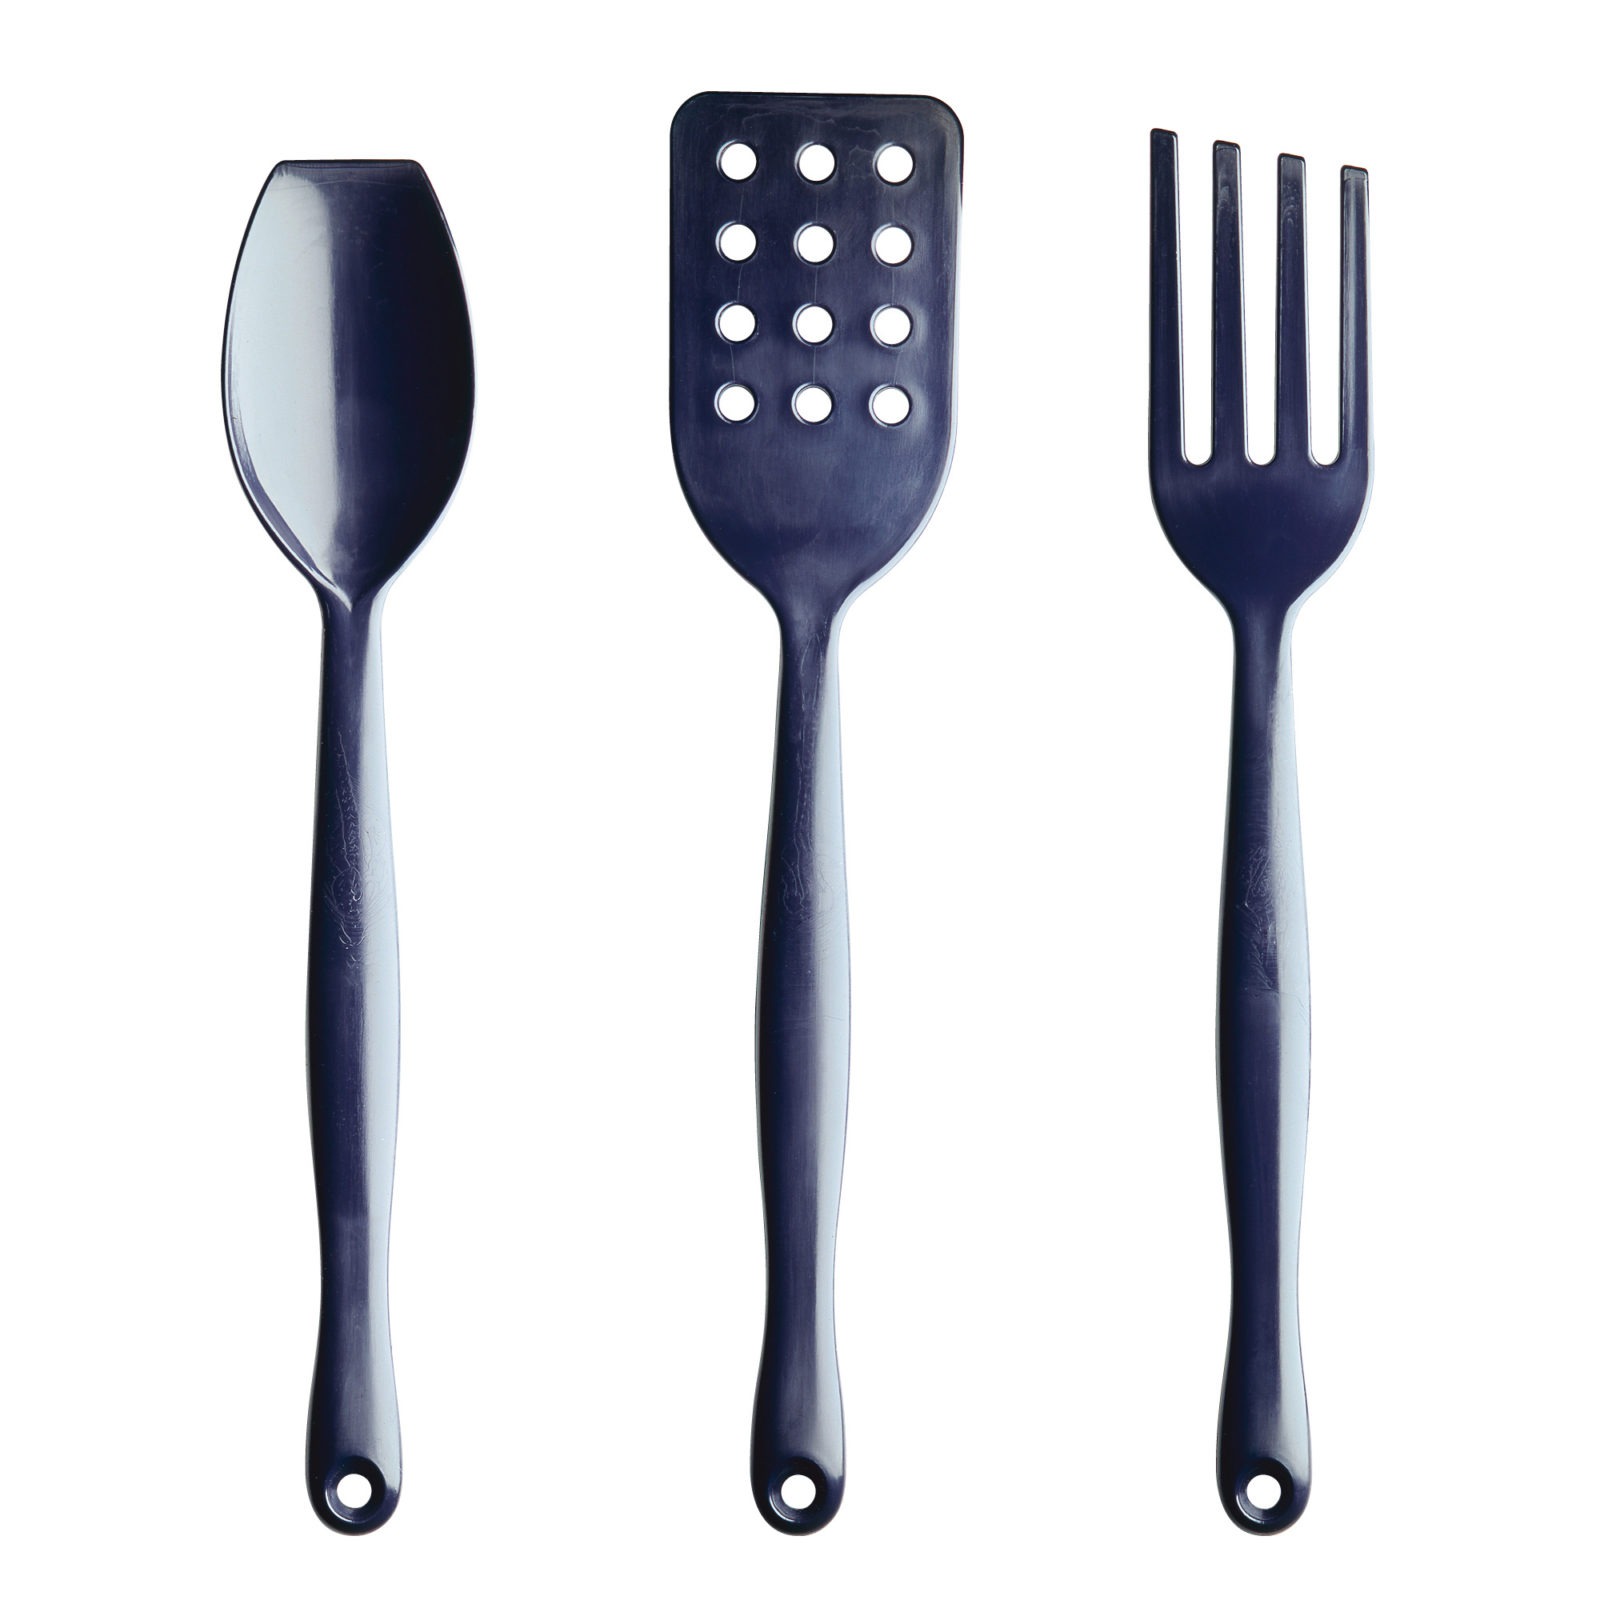 IKEA 365+ kitchen utensils.